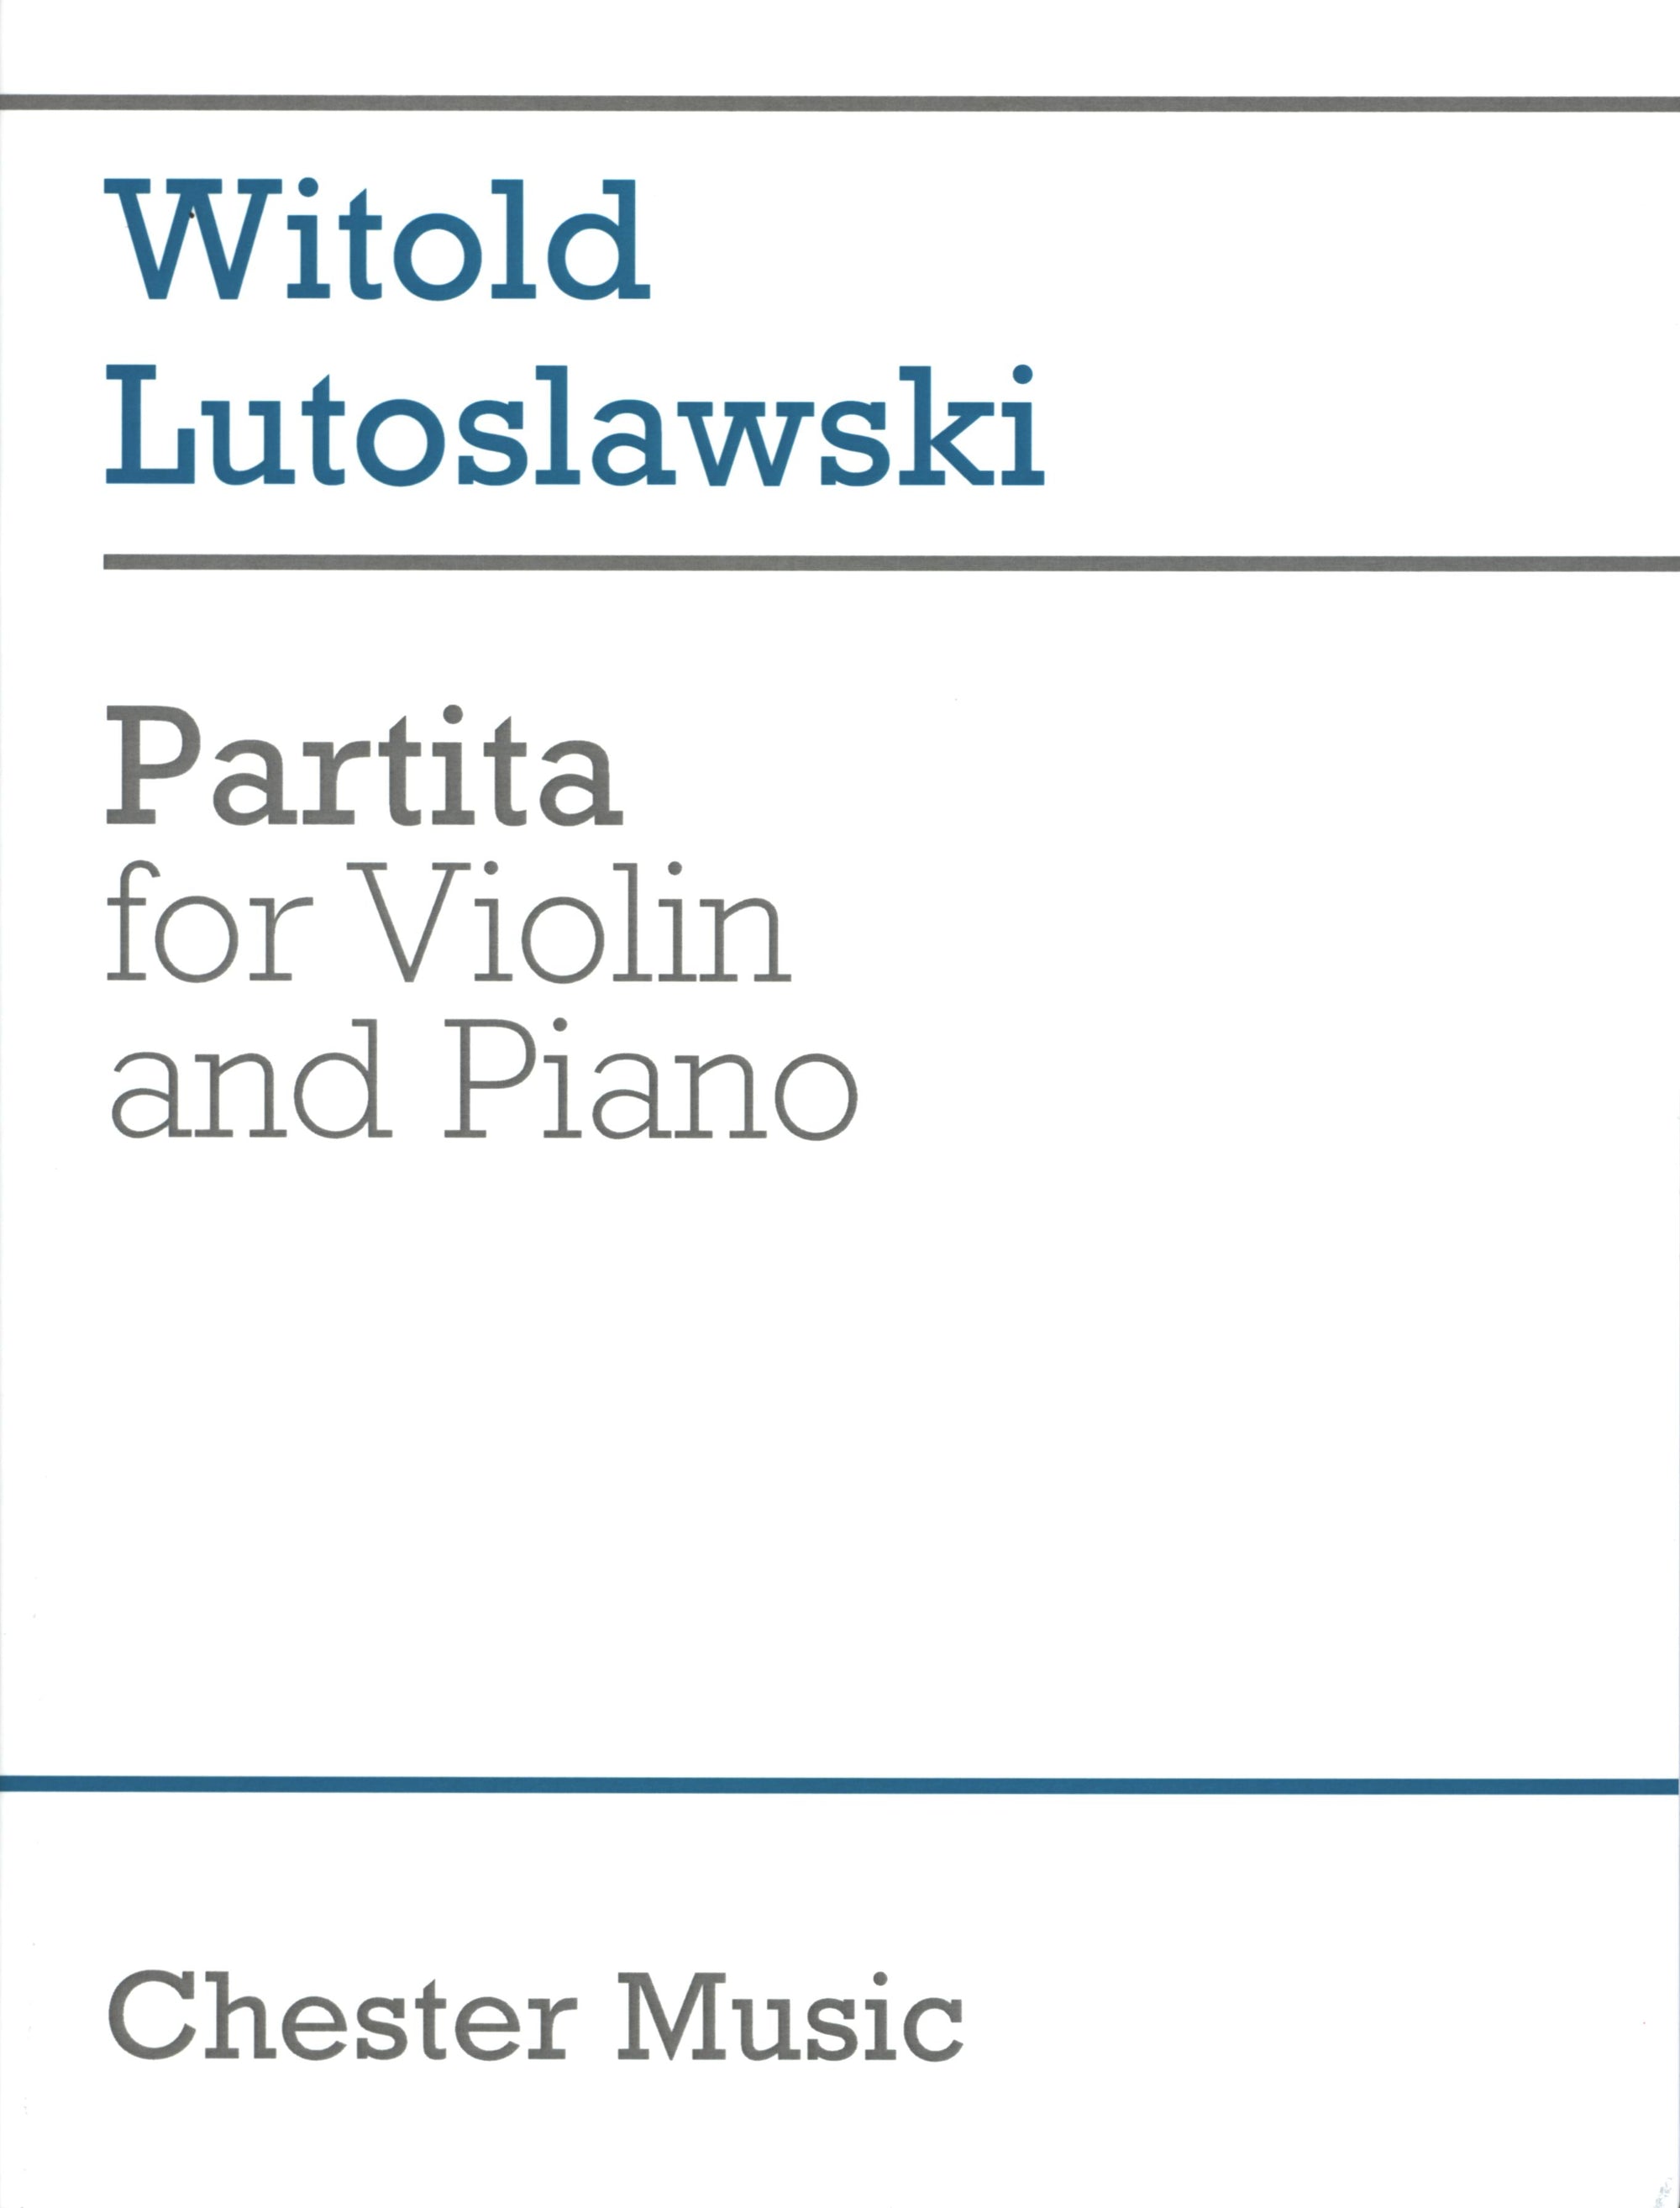 Lutosławski: Partita for Violin and Piano